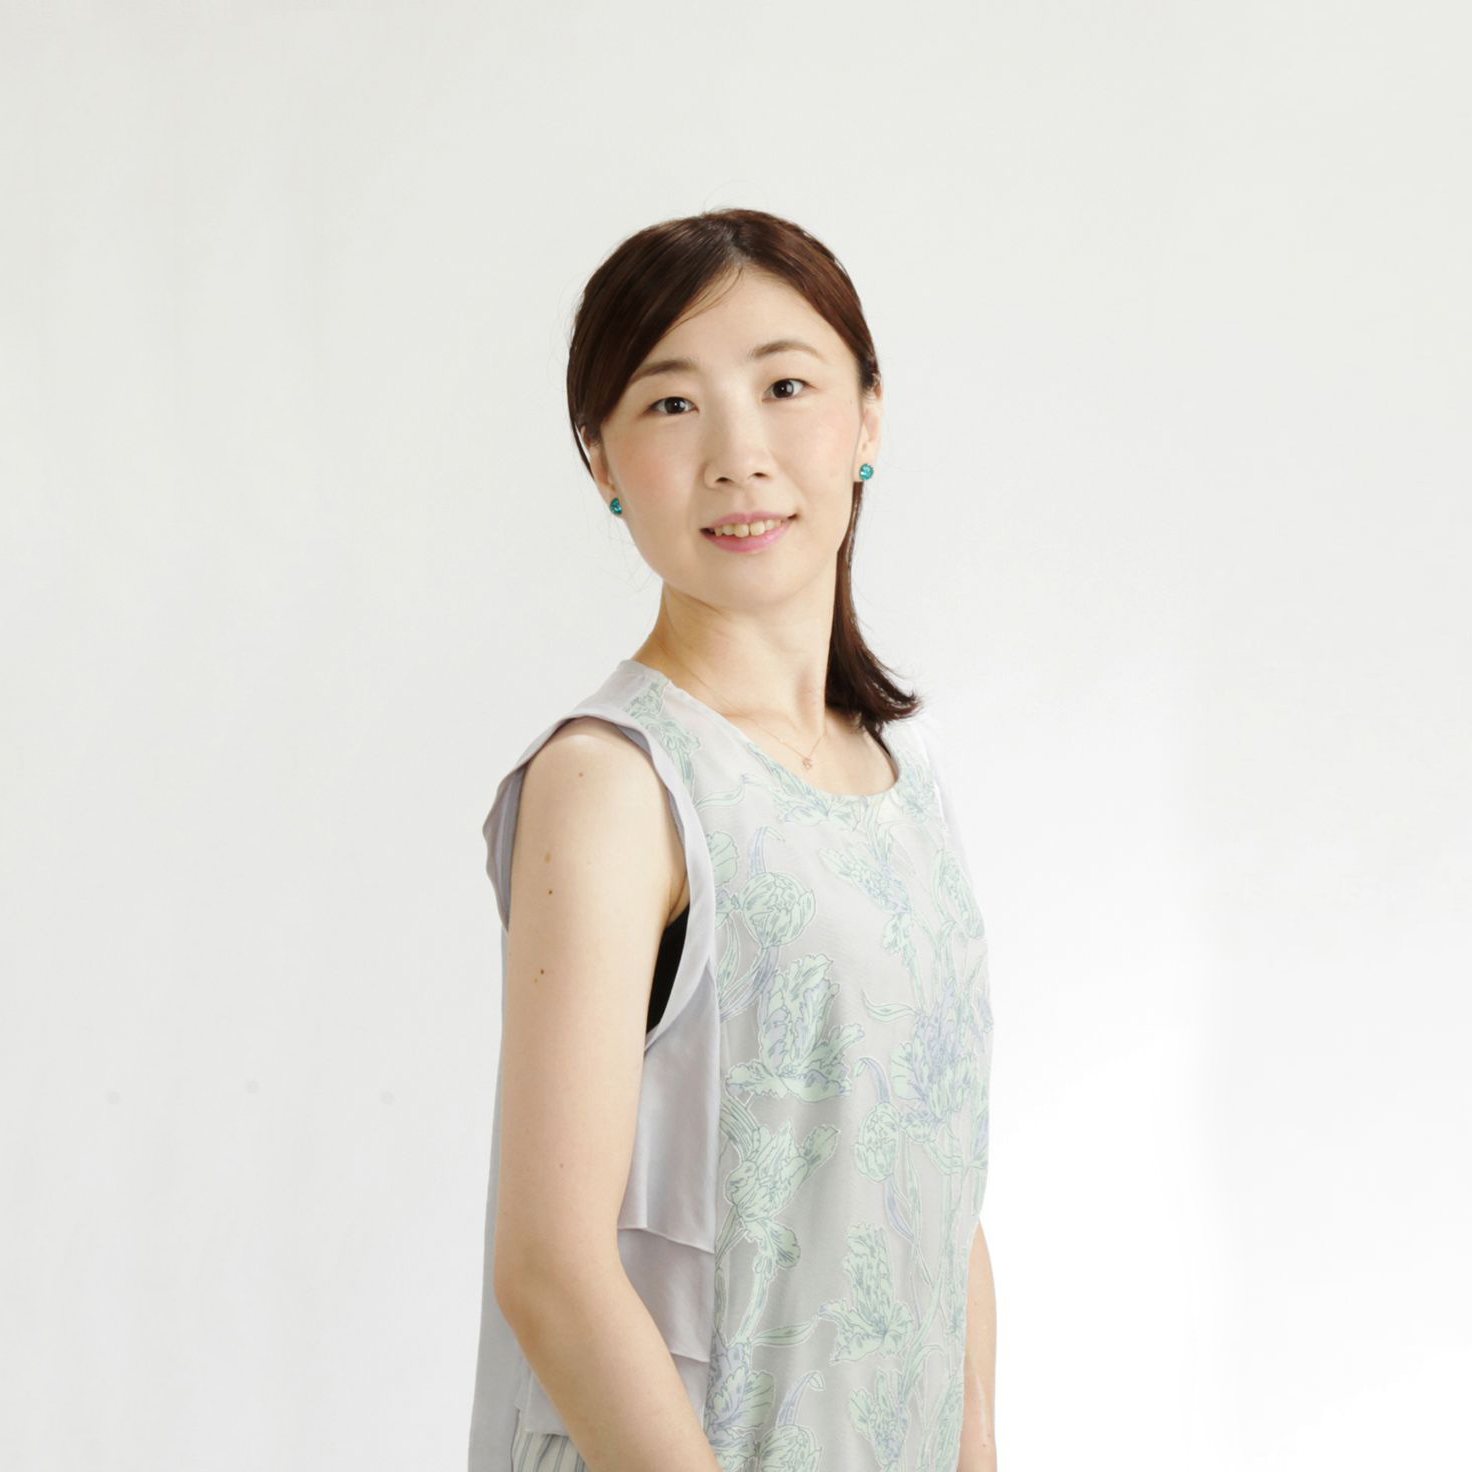 Sayako Iigai